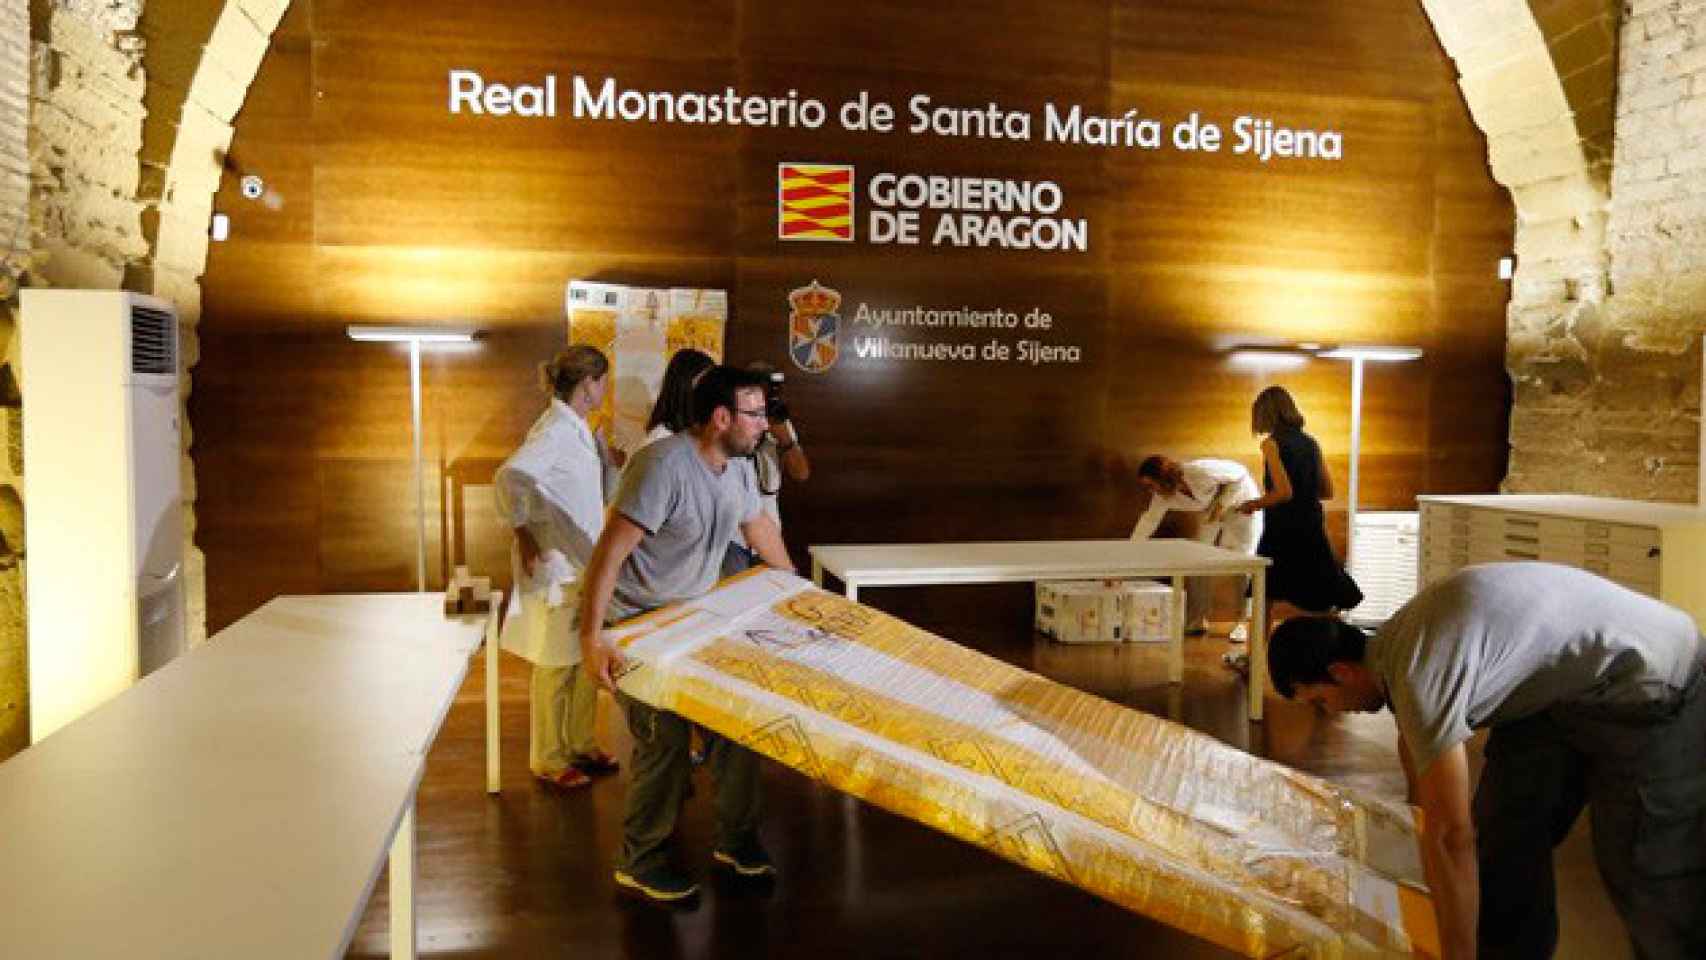 La Generalitat devolvió el pasado año una parte de los Bienes de Sijena al Gobierno de Aragón / CG